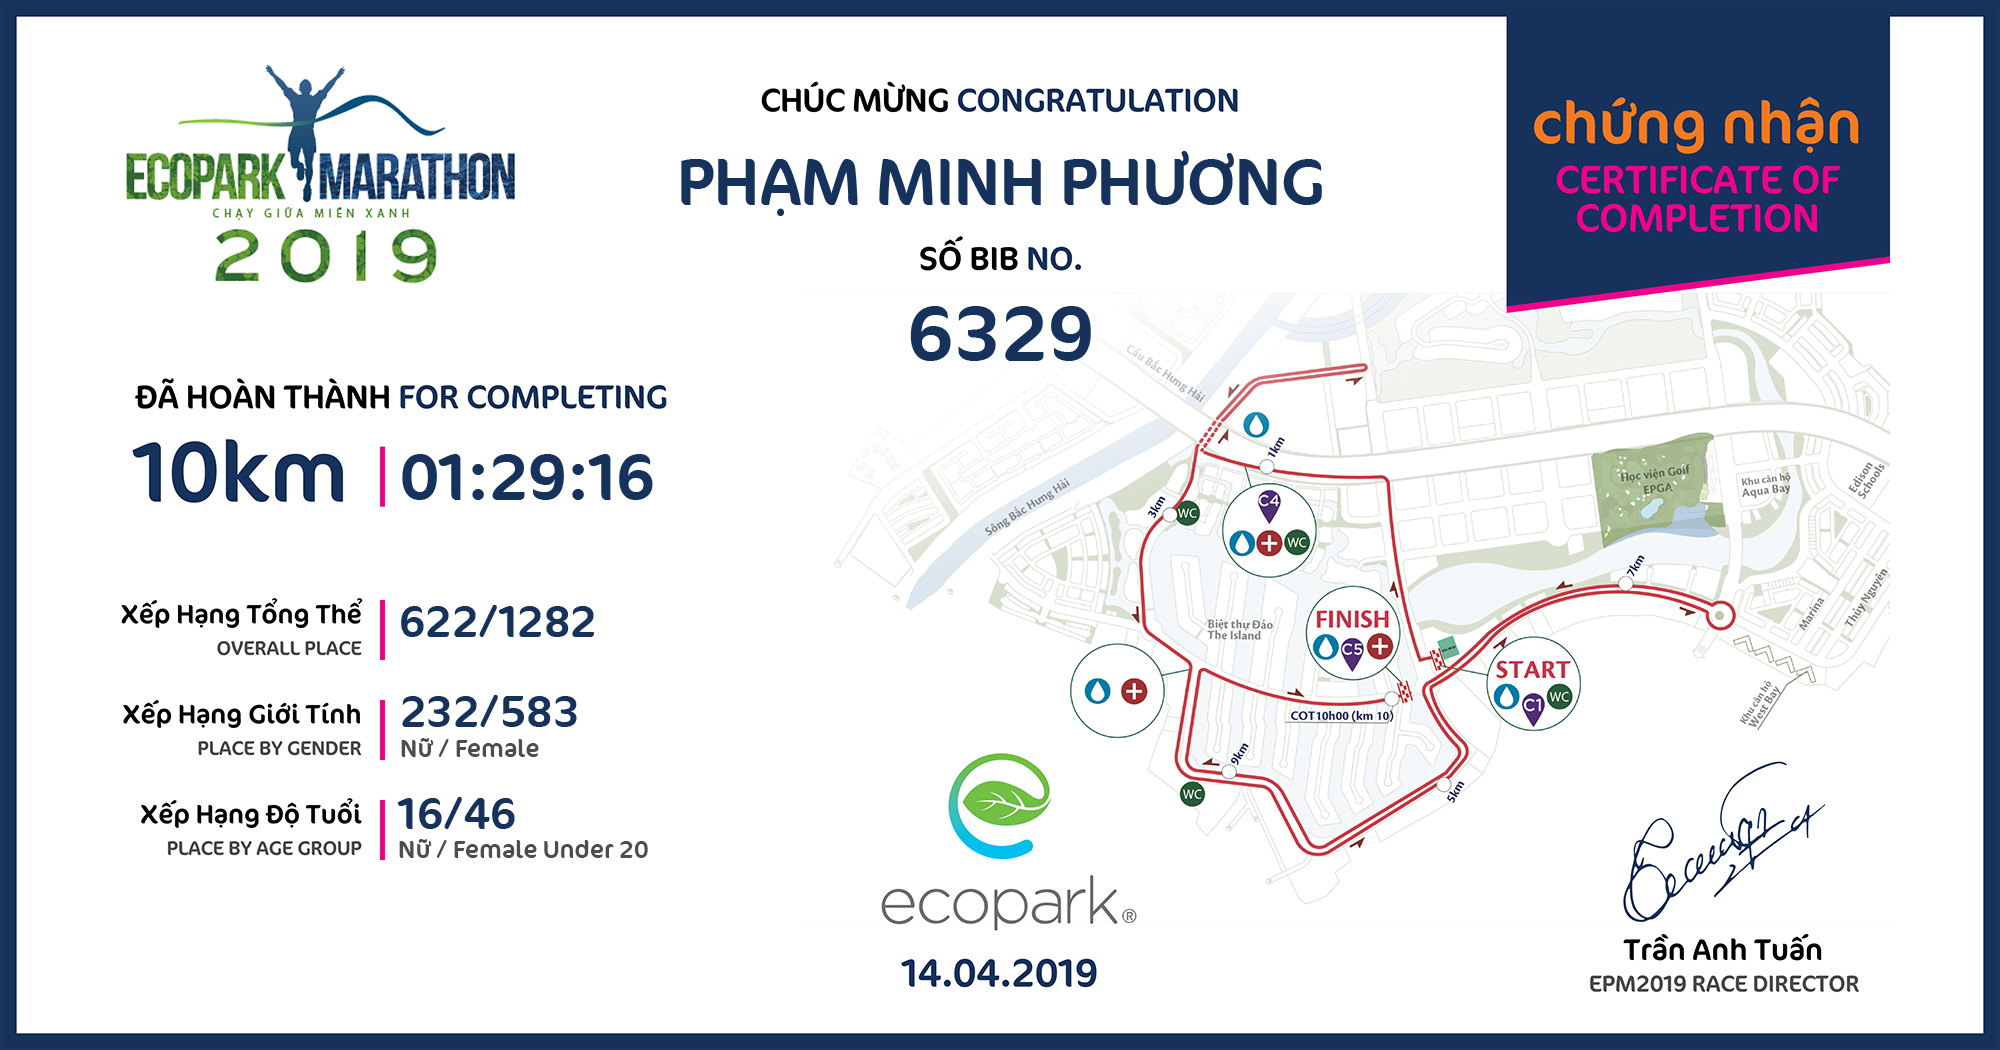 6329 - Phạm Minh Phương